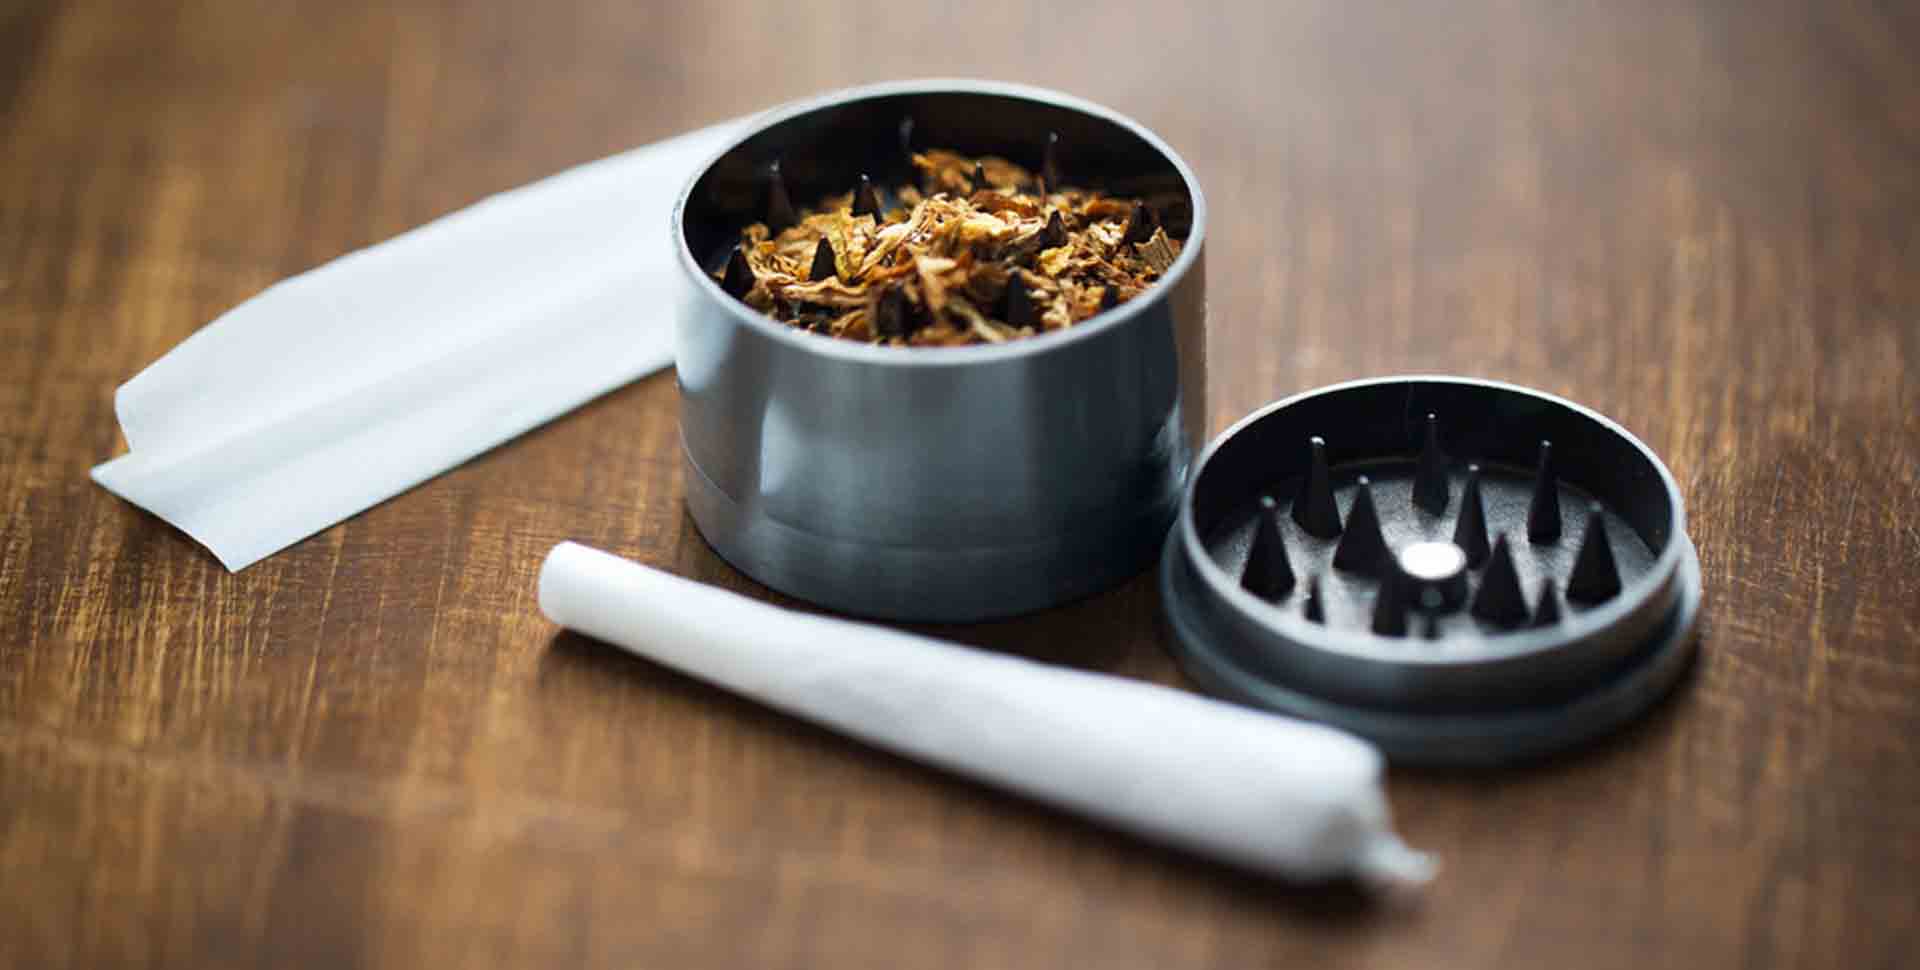 Kovový grinder plný tabaku, papierik na cigarety a ubalená cigareta